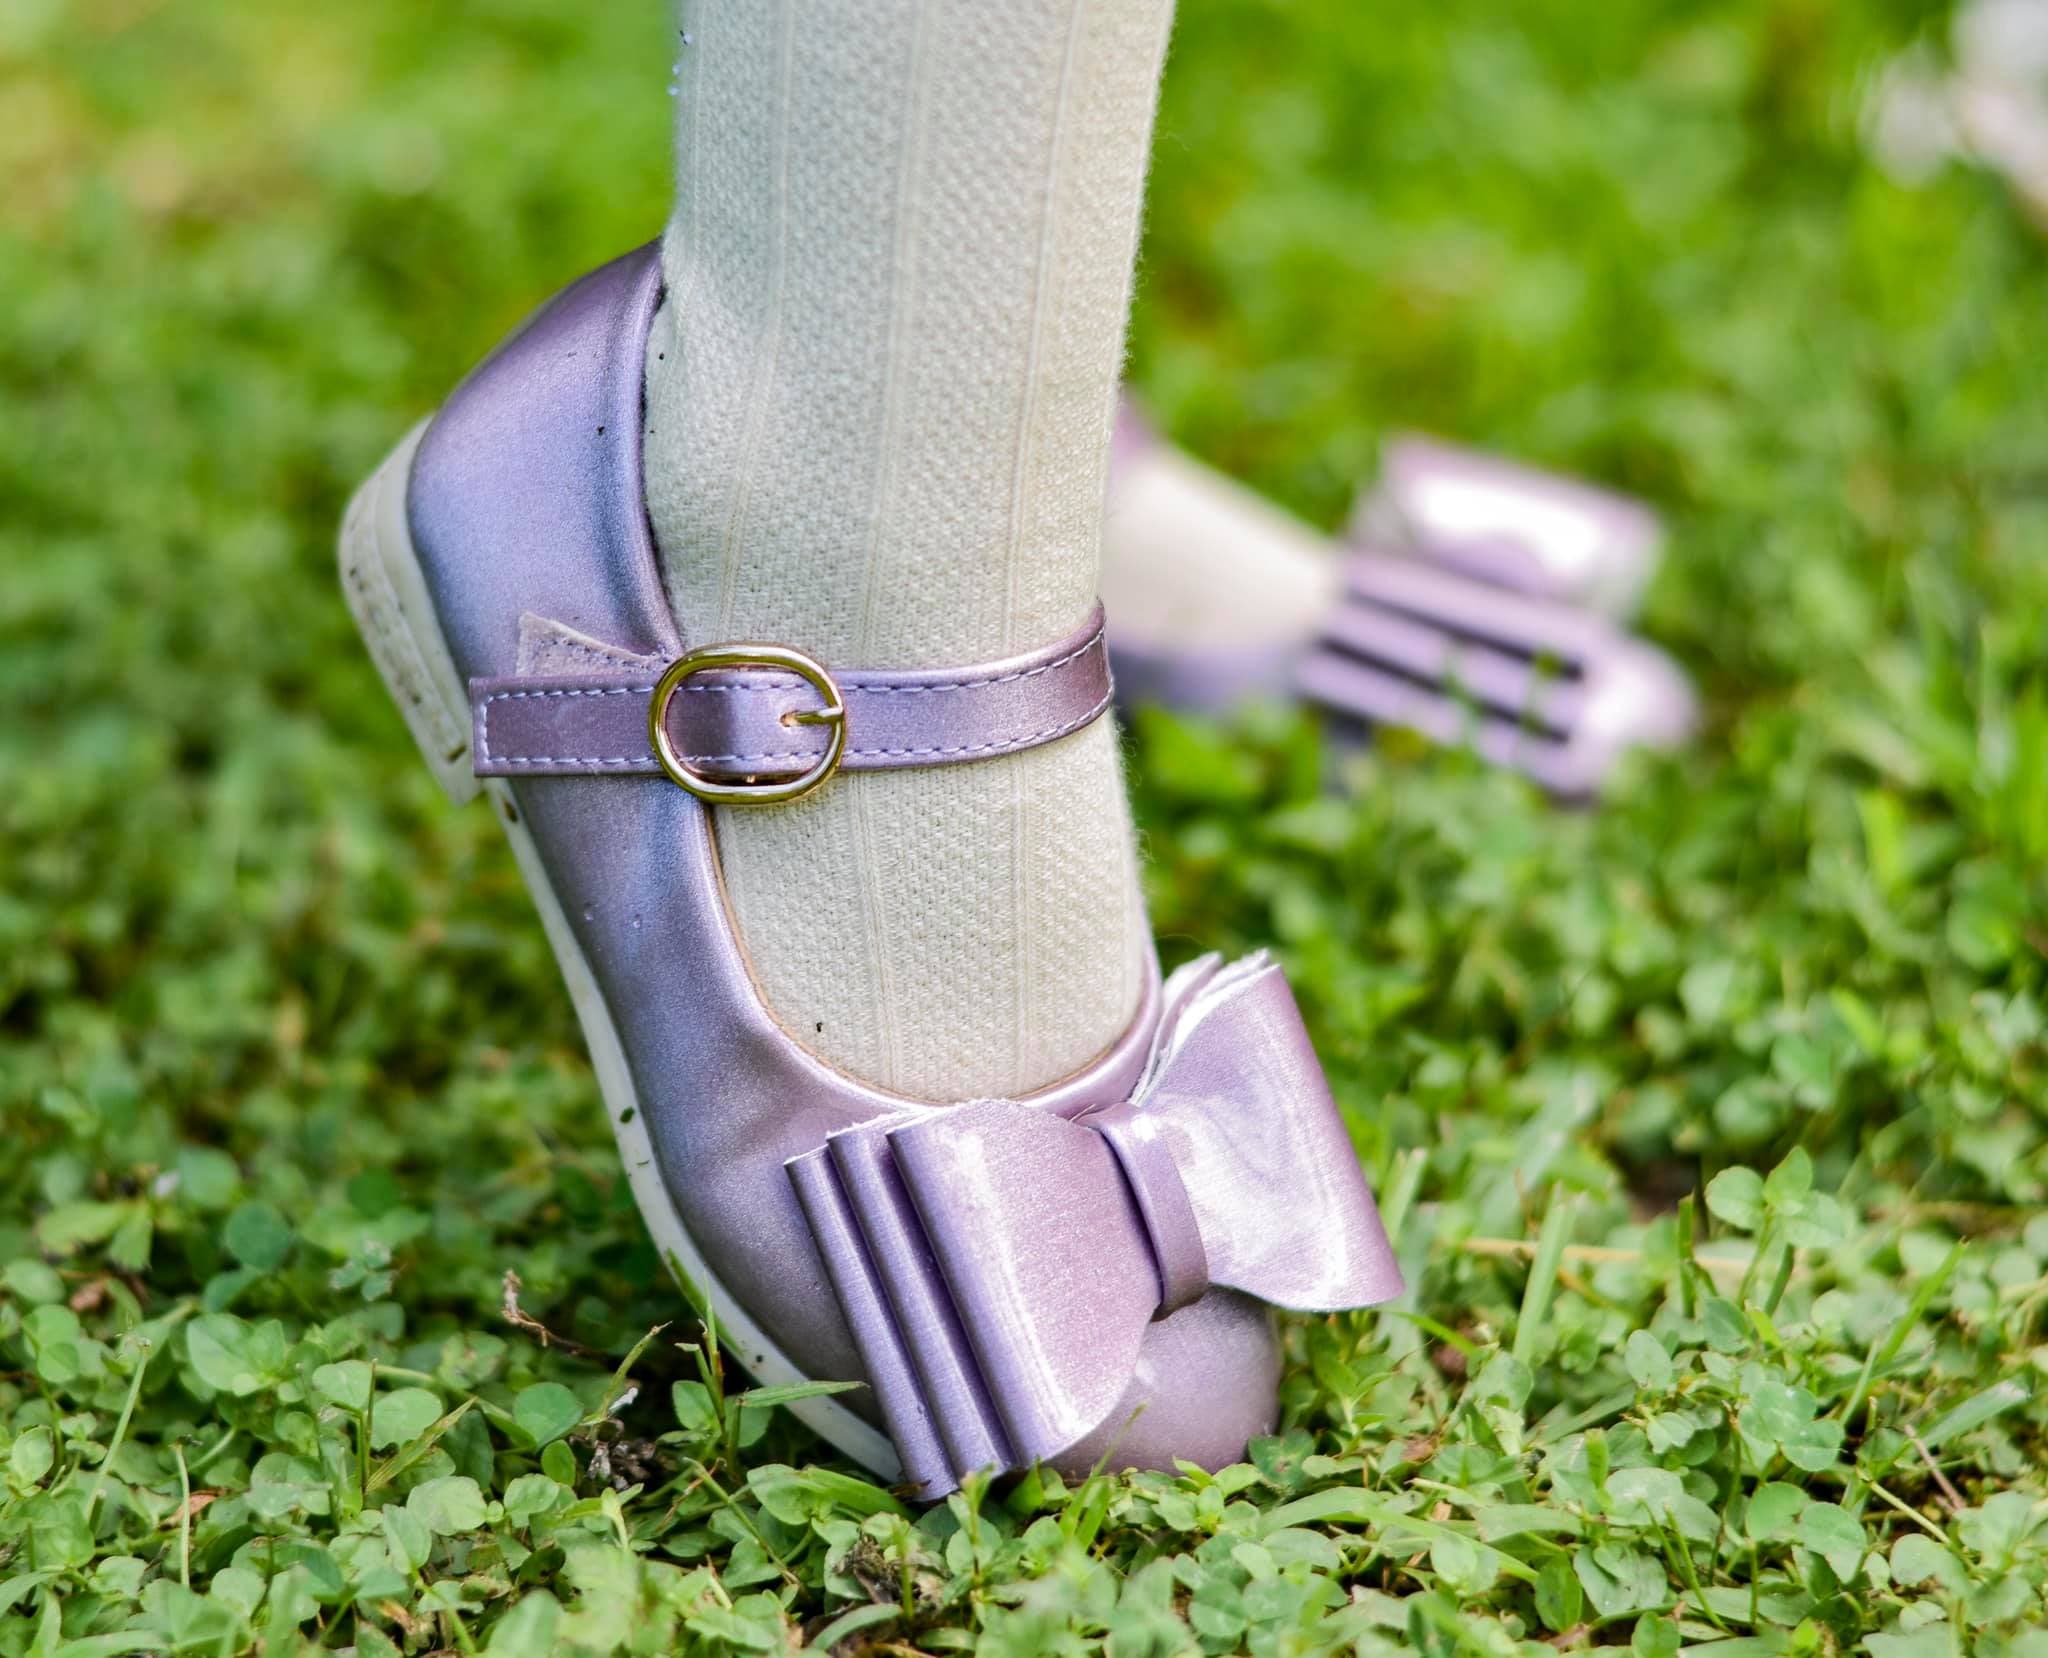 [Orchid Mauve] Bow Shoes